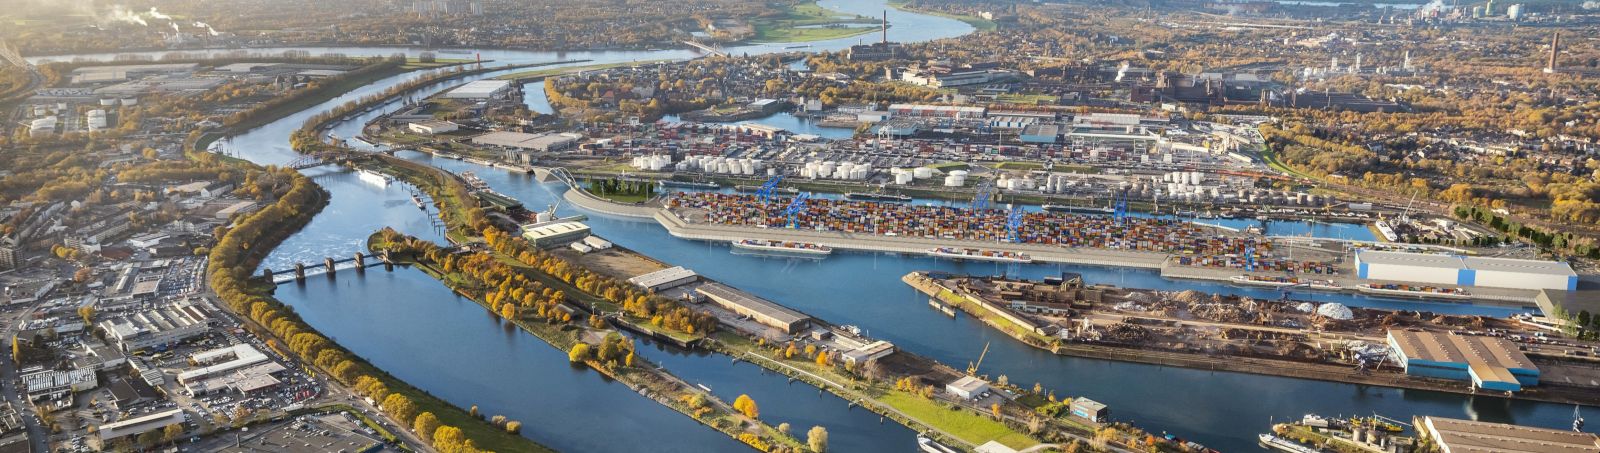 Visualisierung des geplanten Containerterminals im Duisburger Binnenhafen.